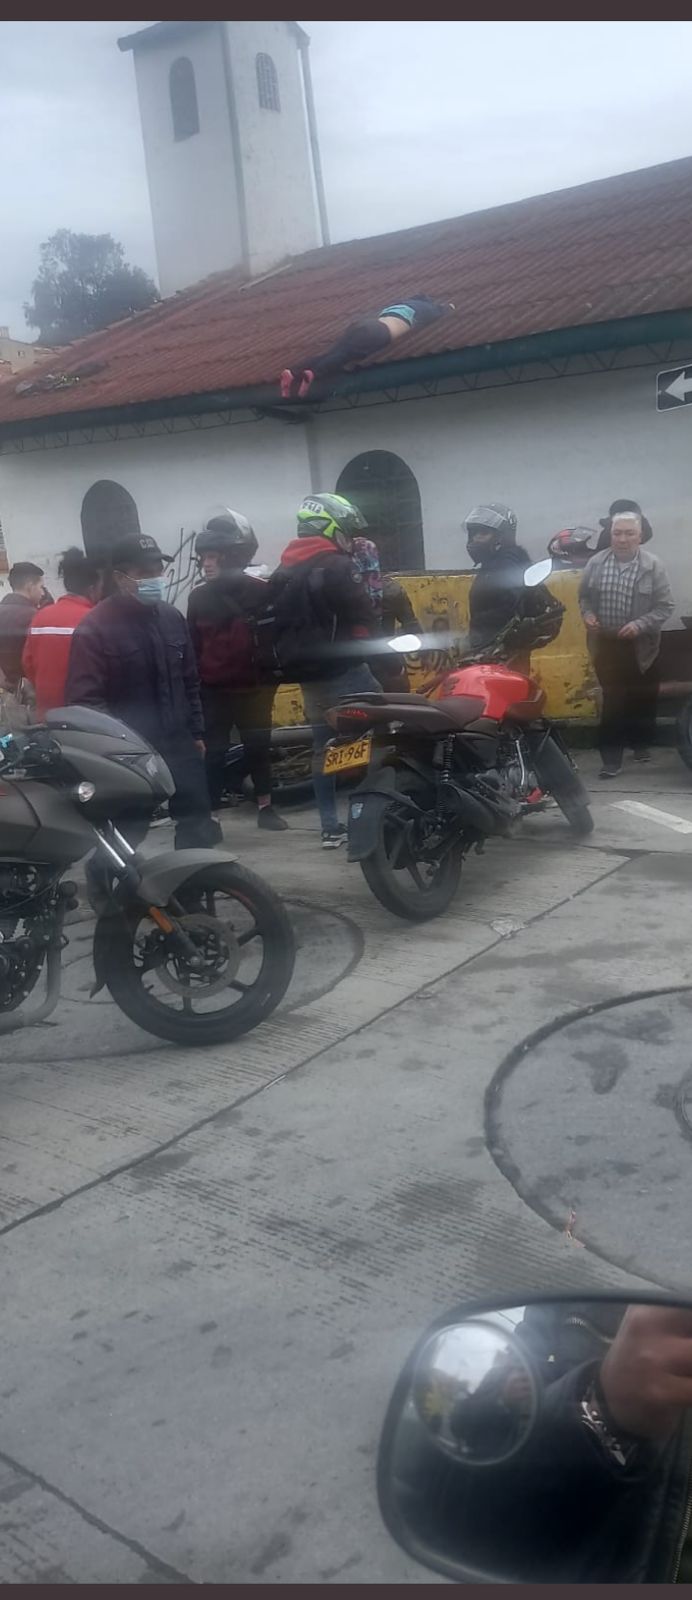 Tras un accidente de tránsito, parrillera de una moto terminó en el techo  de una iglesia en Bogotá - Infobae